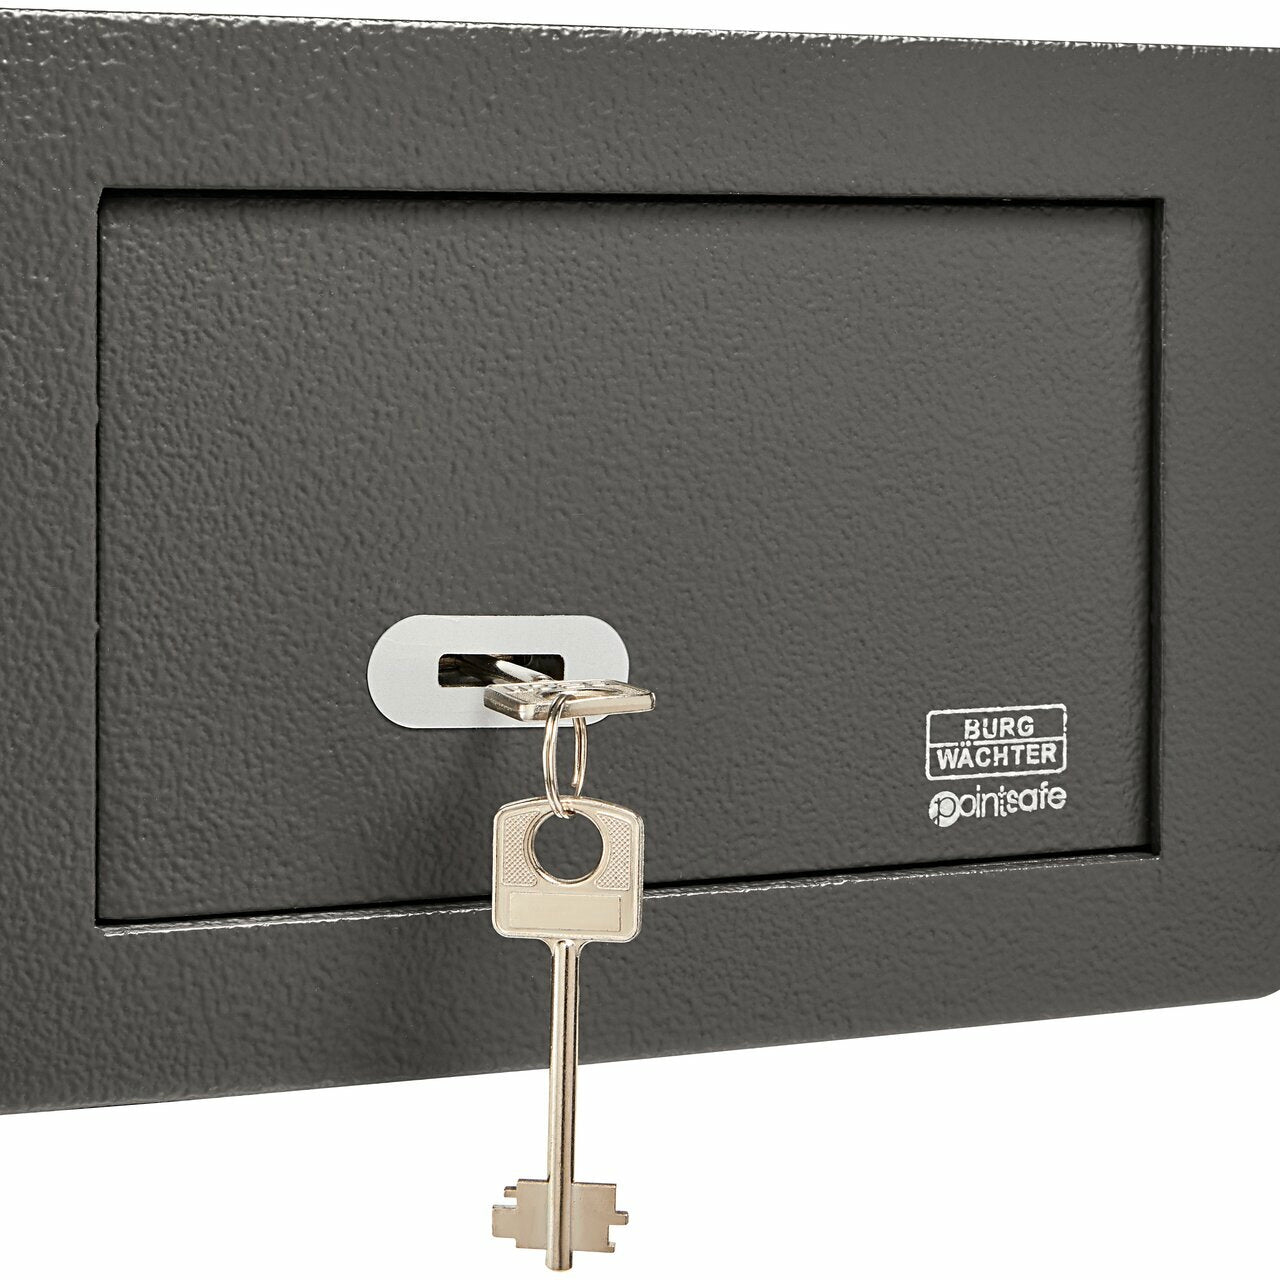 Boite à clés 80 mm - Serrure à code BURG WACHTER Key Safe 50